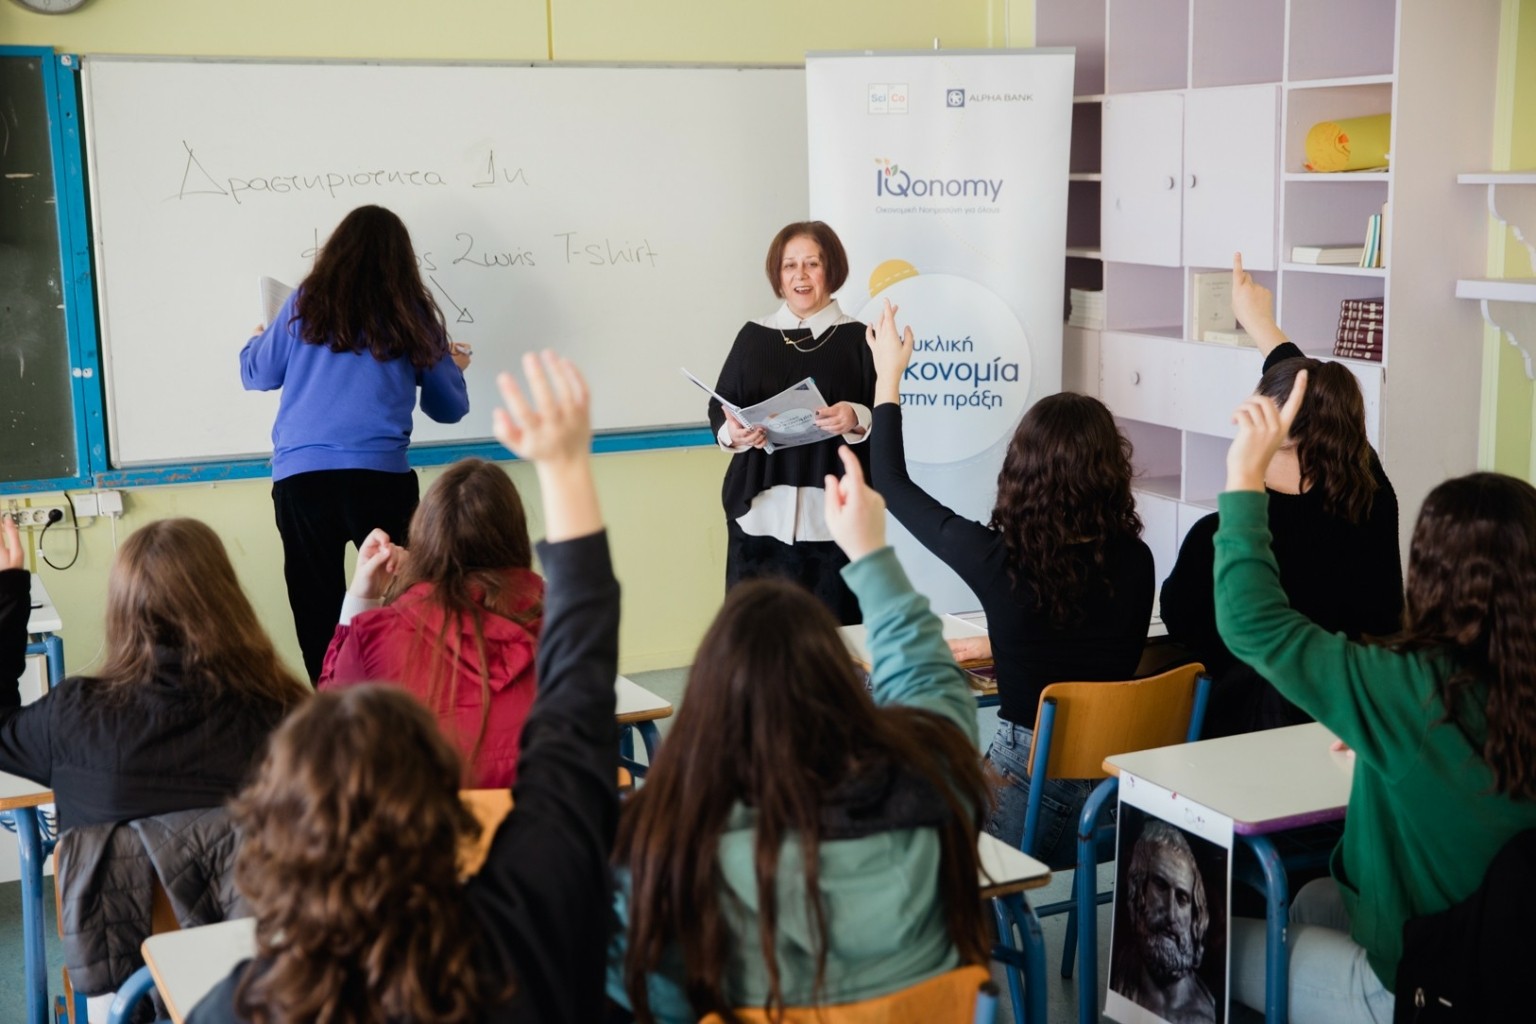 Αlpha Bank: «Κυκλική Οικονομία στην Πράξη» σε σχολεία όλης της Ελλάδας